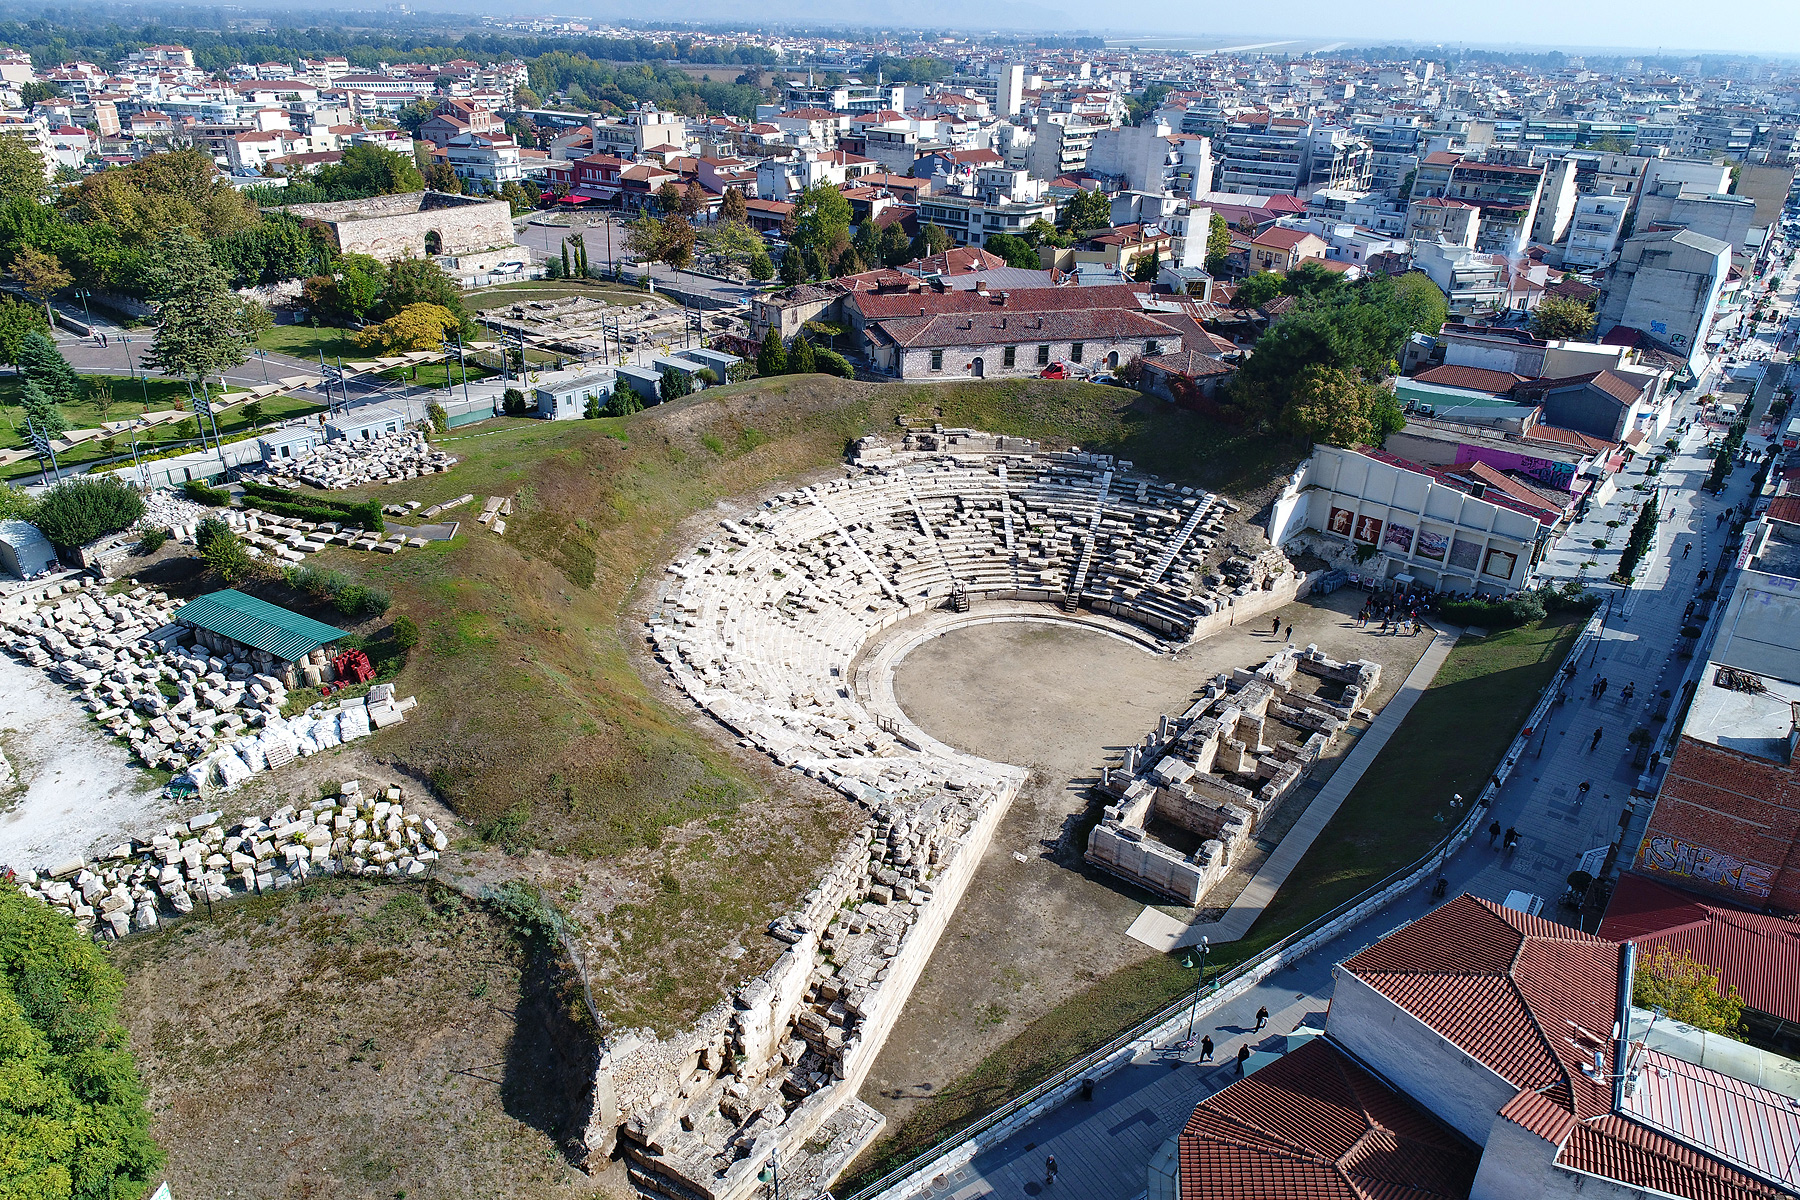 Aλλα 3,4 εκατ. ευρώ στο Αρχαίο Θέατρο Λάρισας - Εργα αποκατάστασης της σκηνής 